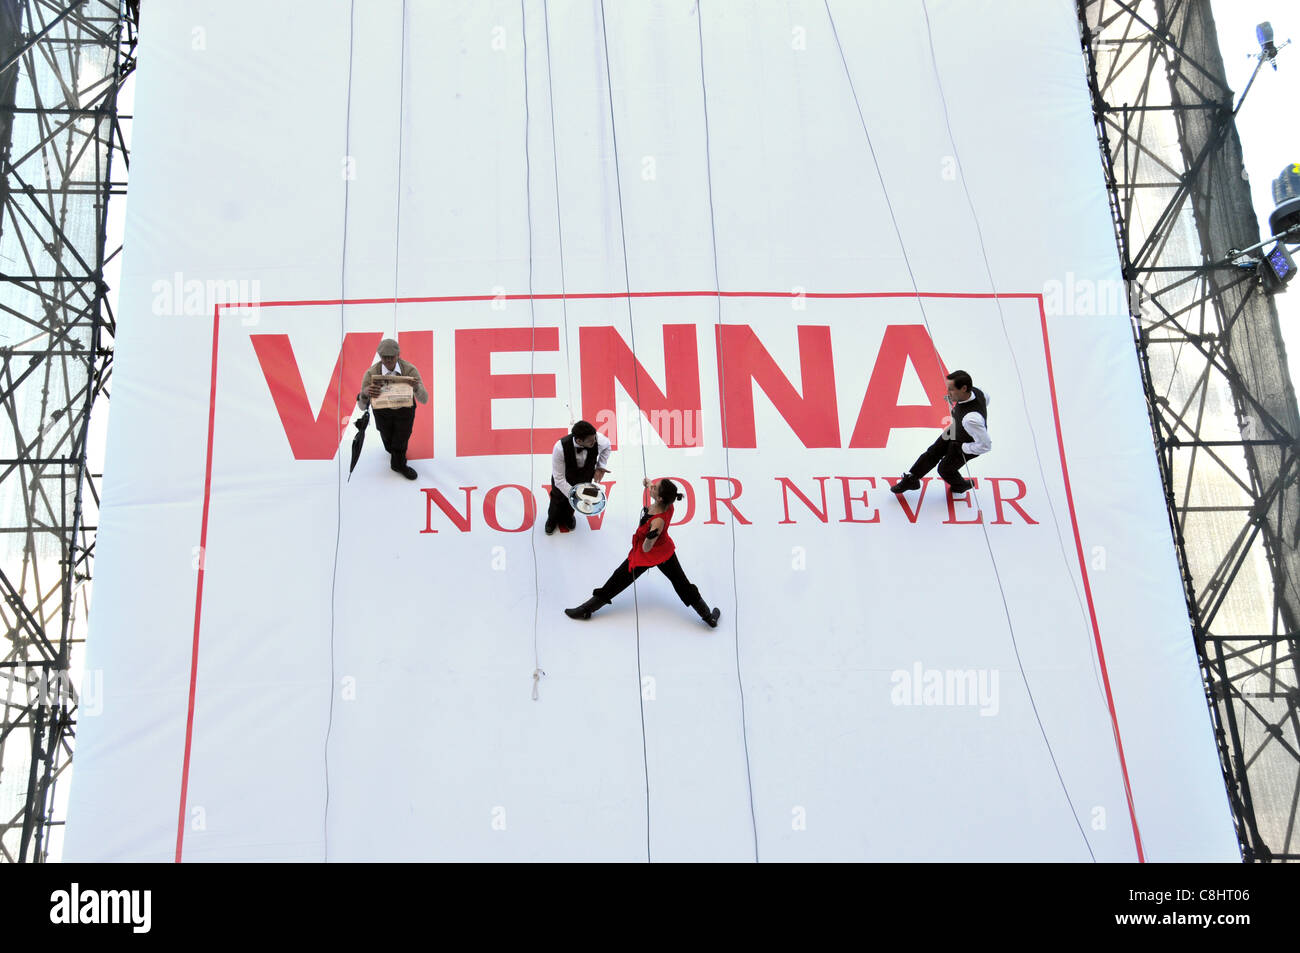 Maintenant ou jamais de Vienne offrent des bas une plate-forme érigée en face de Nelsons Column pour promouvoir le tourisme à Vienne Mardi 25 Octobre 2011 Banque D'Images